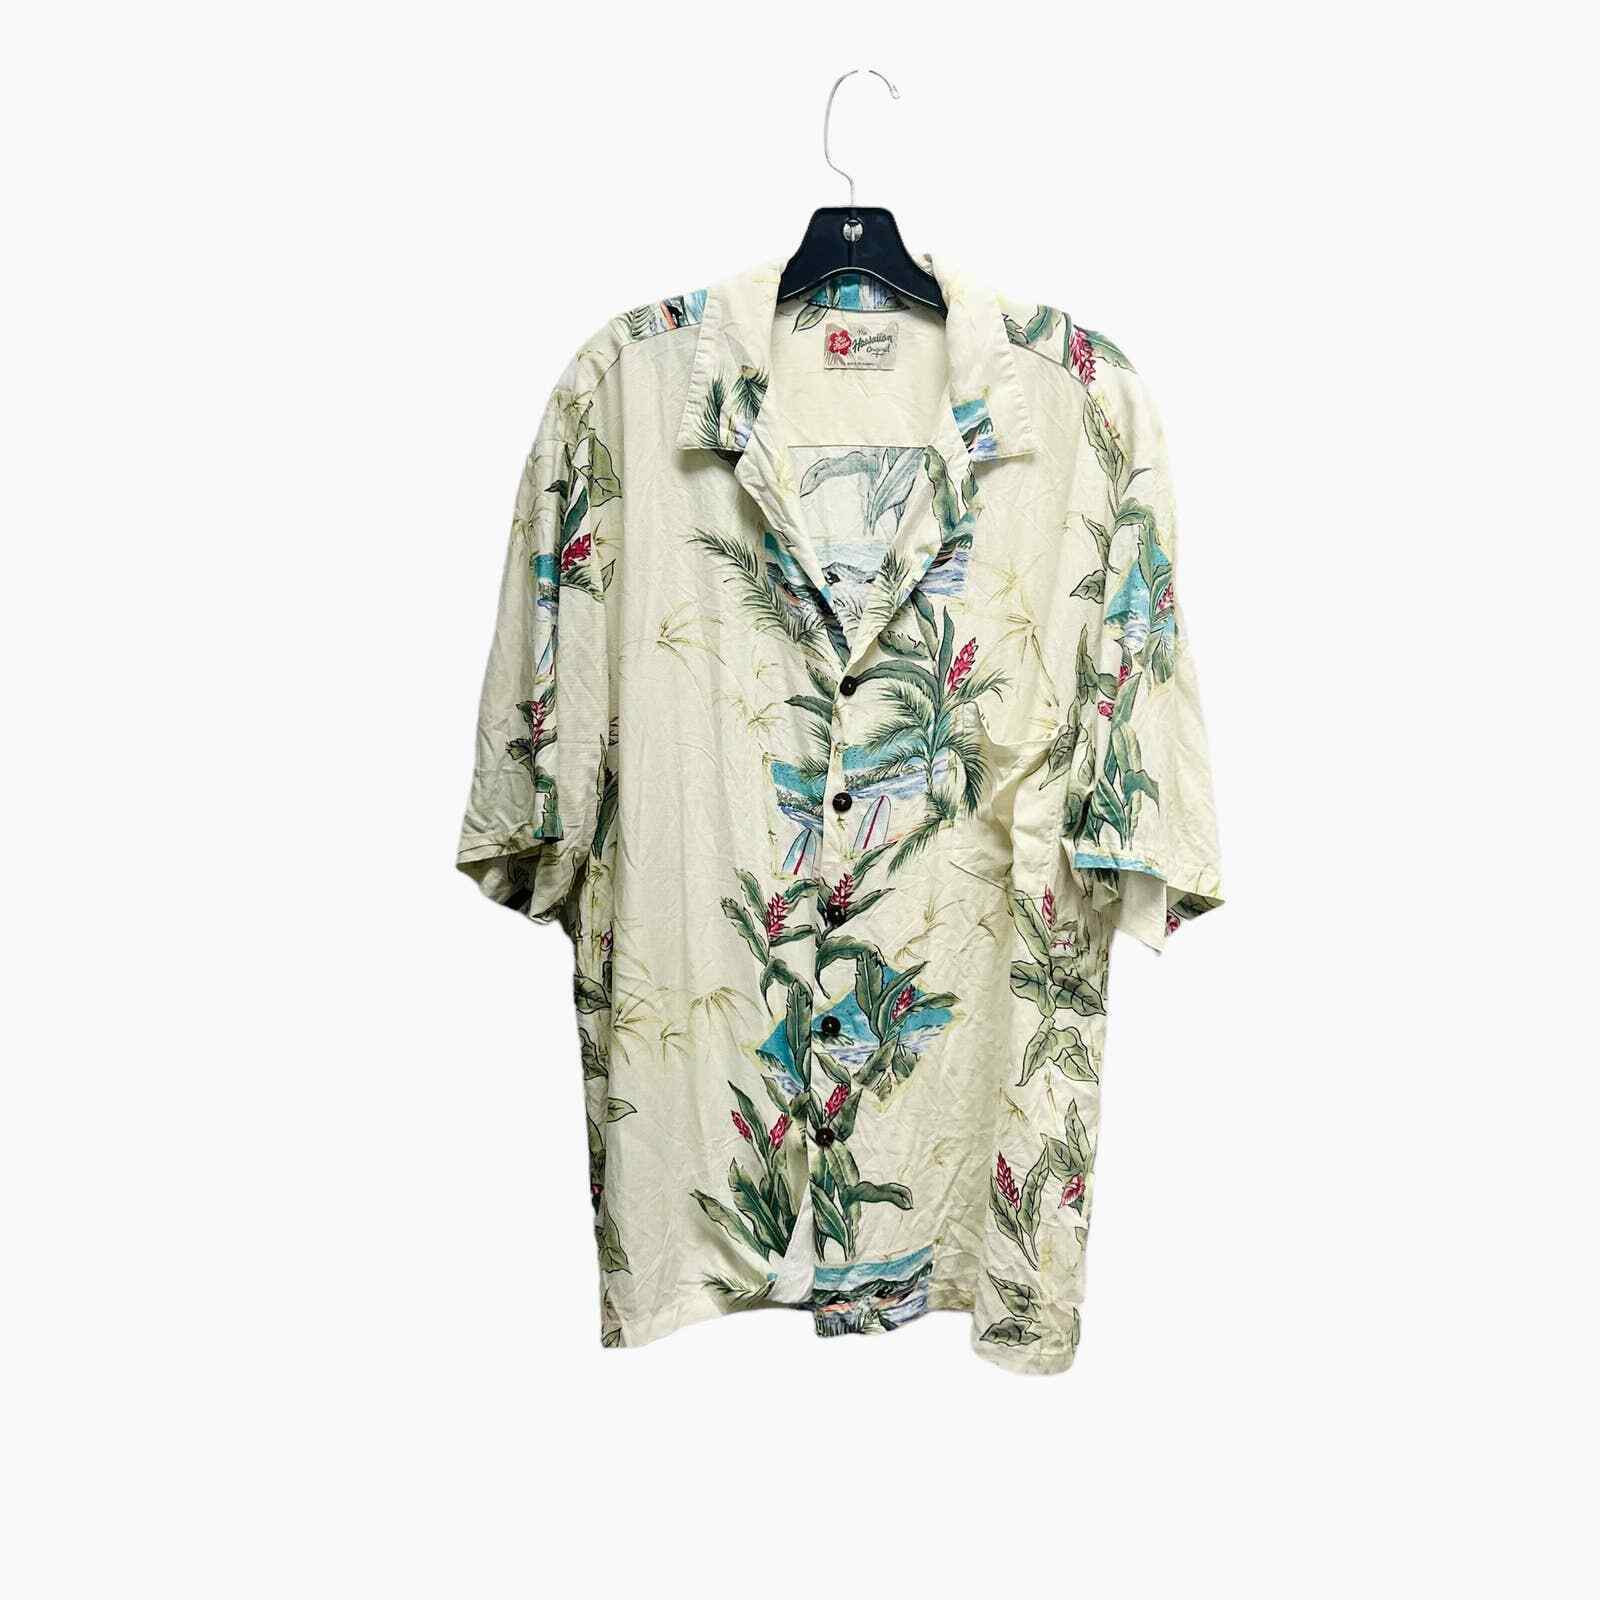 Vintage Hilo Hattie Hawaiian Shirt Mens size XL made in Hawaii 